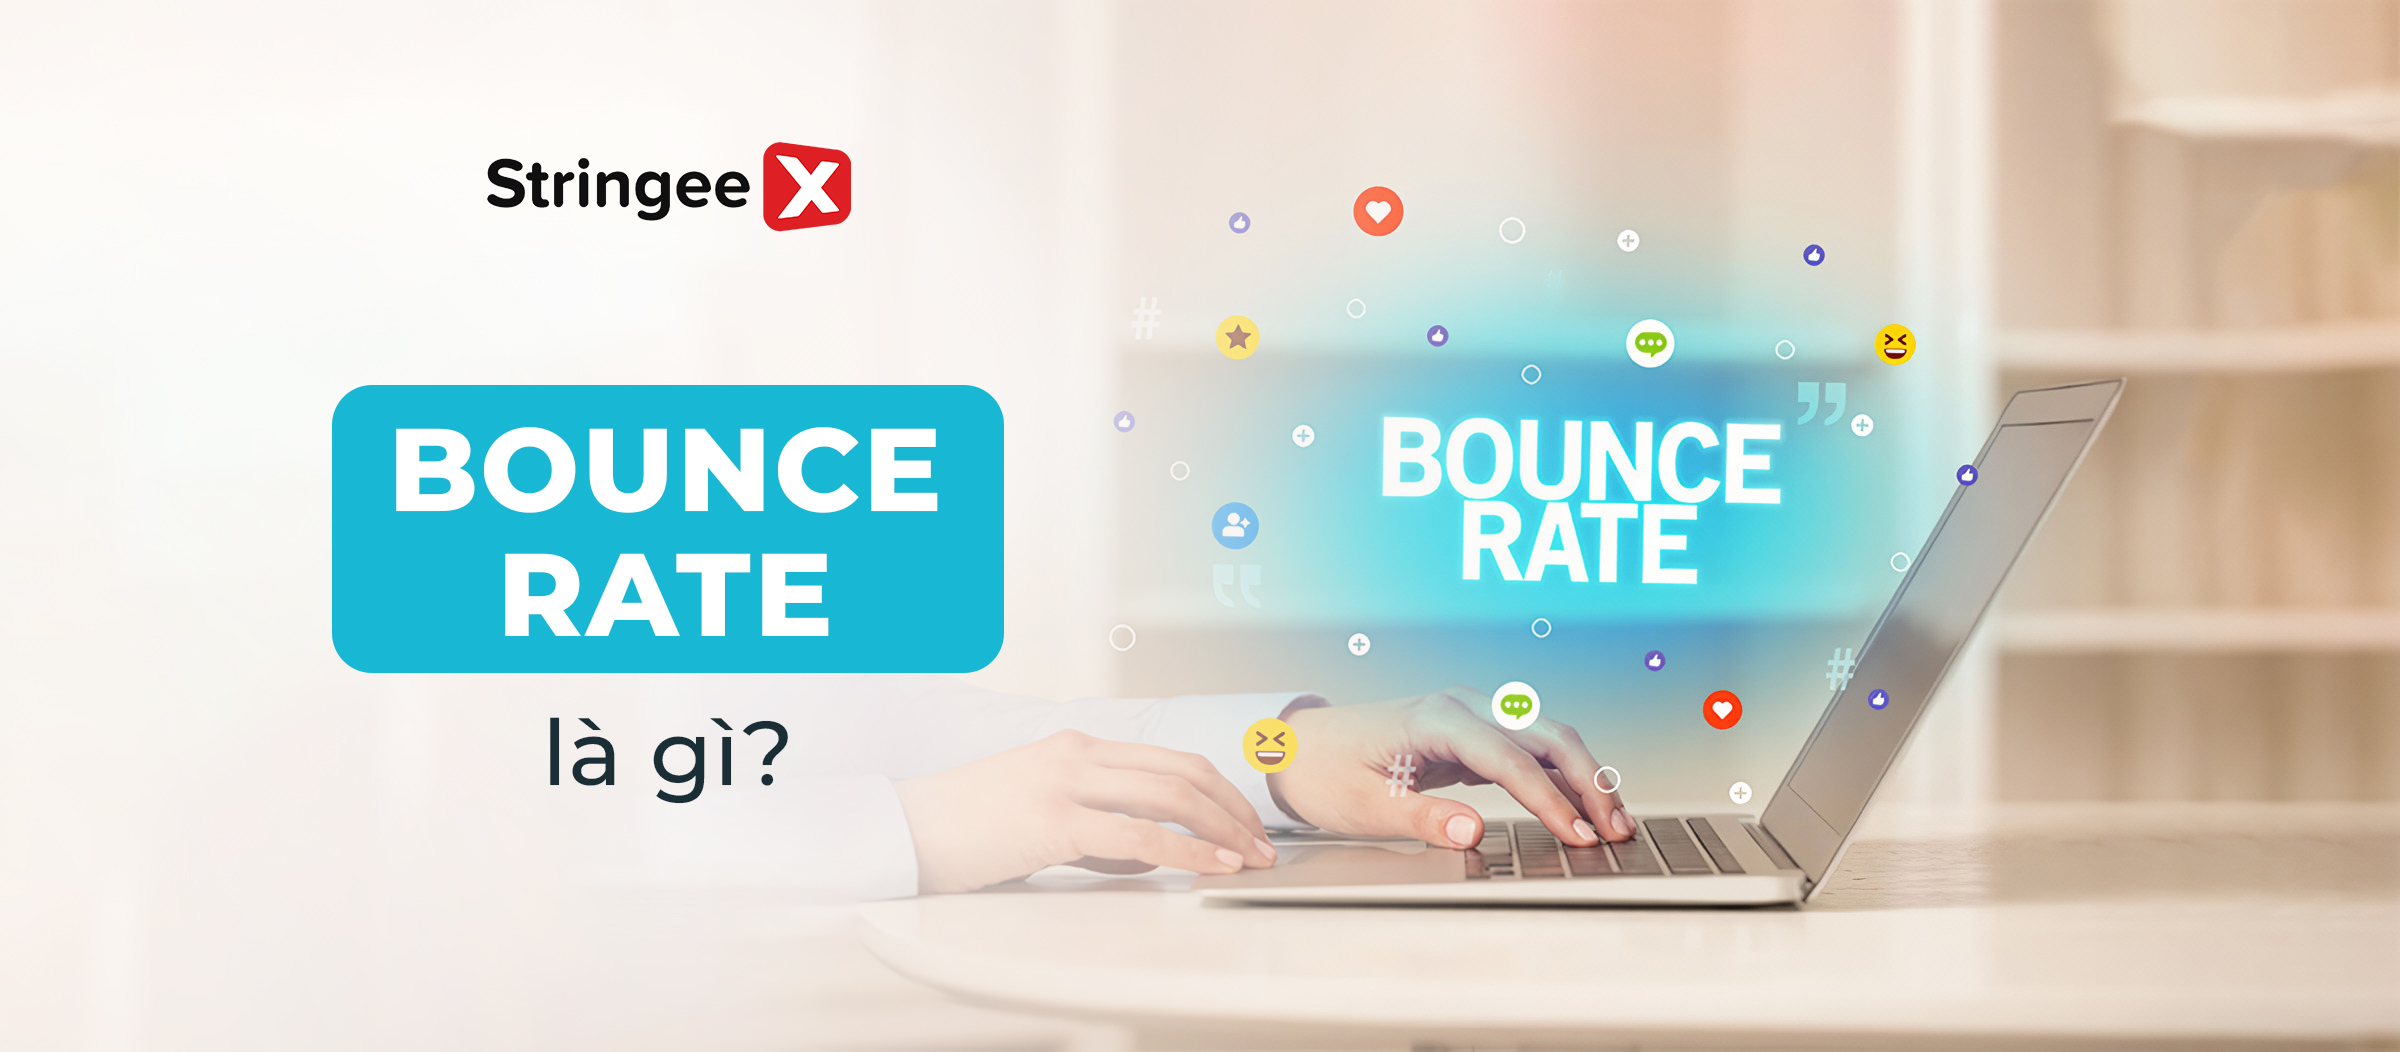 Bounce rate là gì? Cách giảm tỷ lệ thoát trang hiệu quả